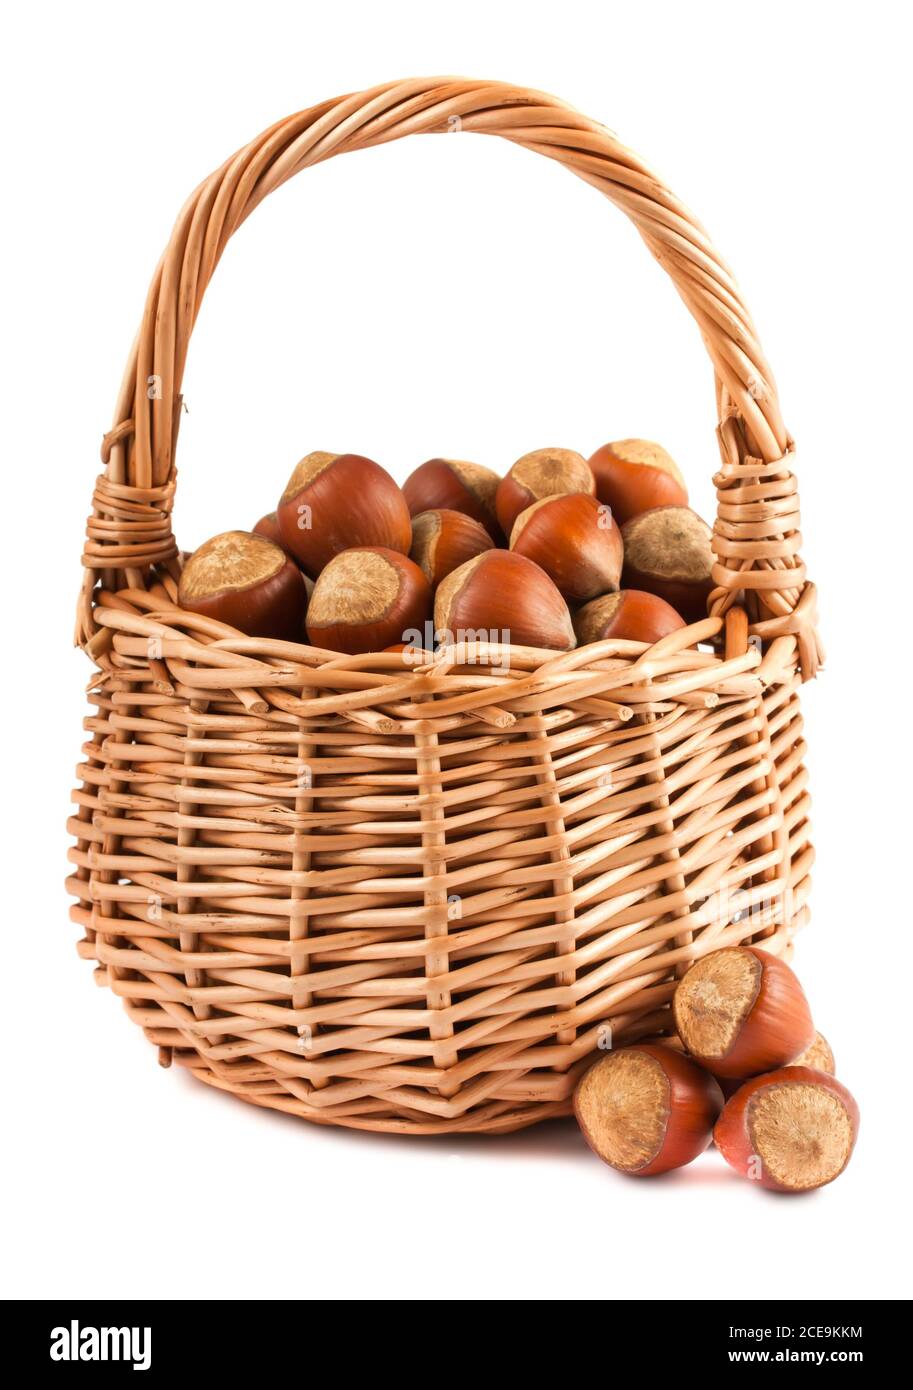 Wicker basket with hazelnuts Stock Photo